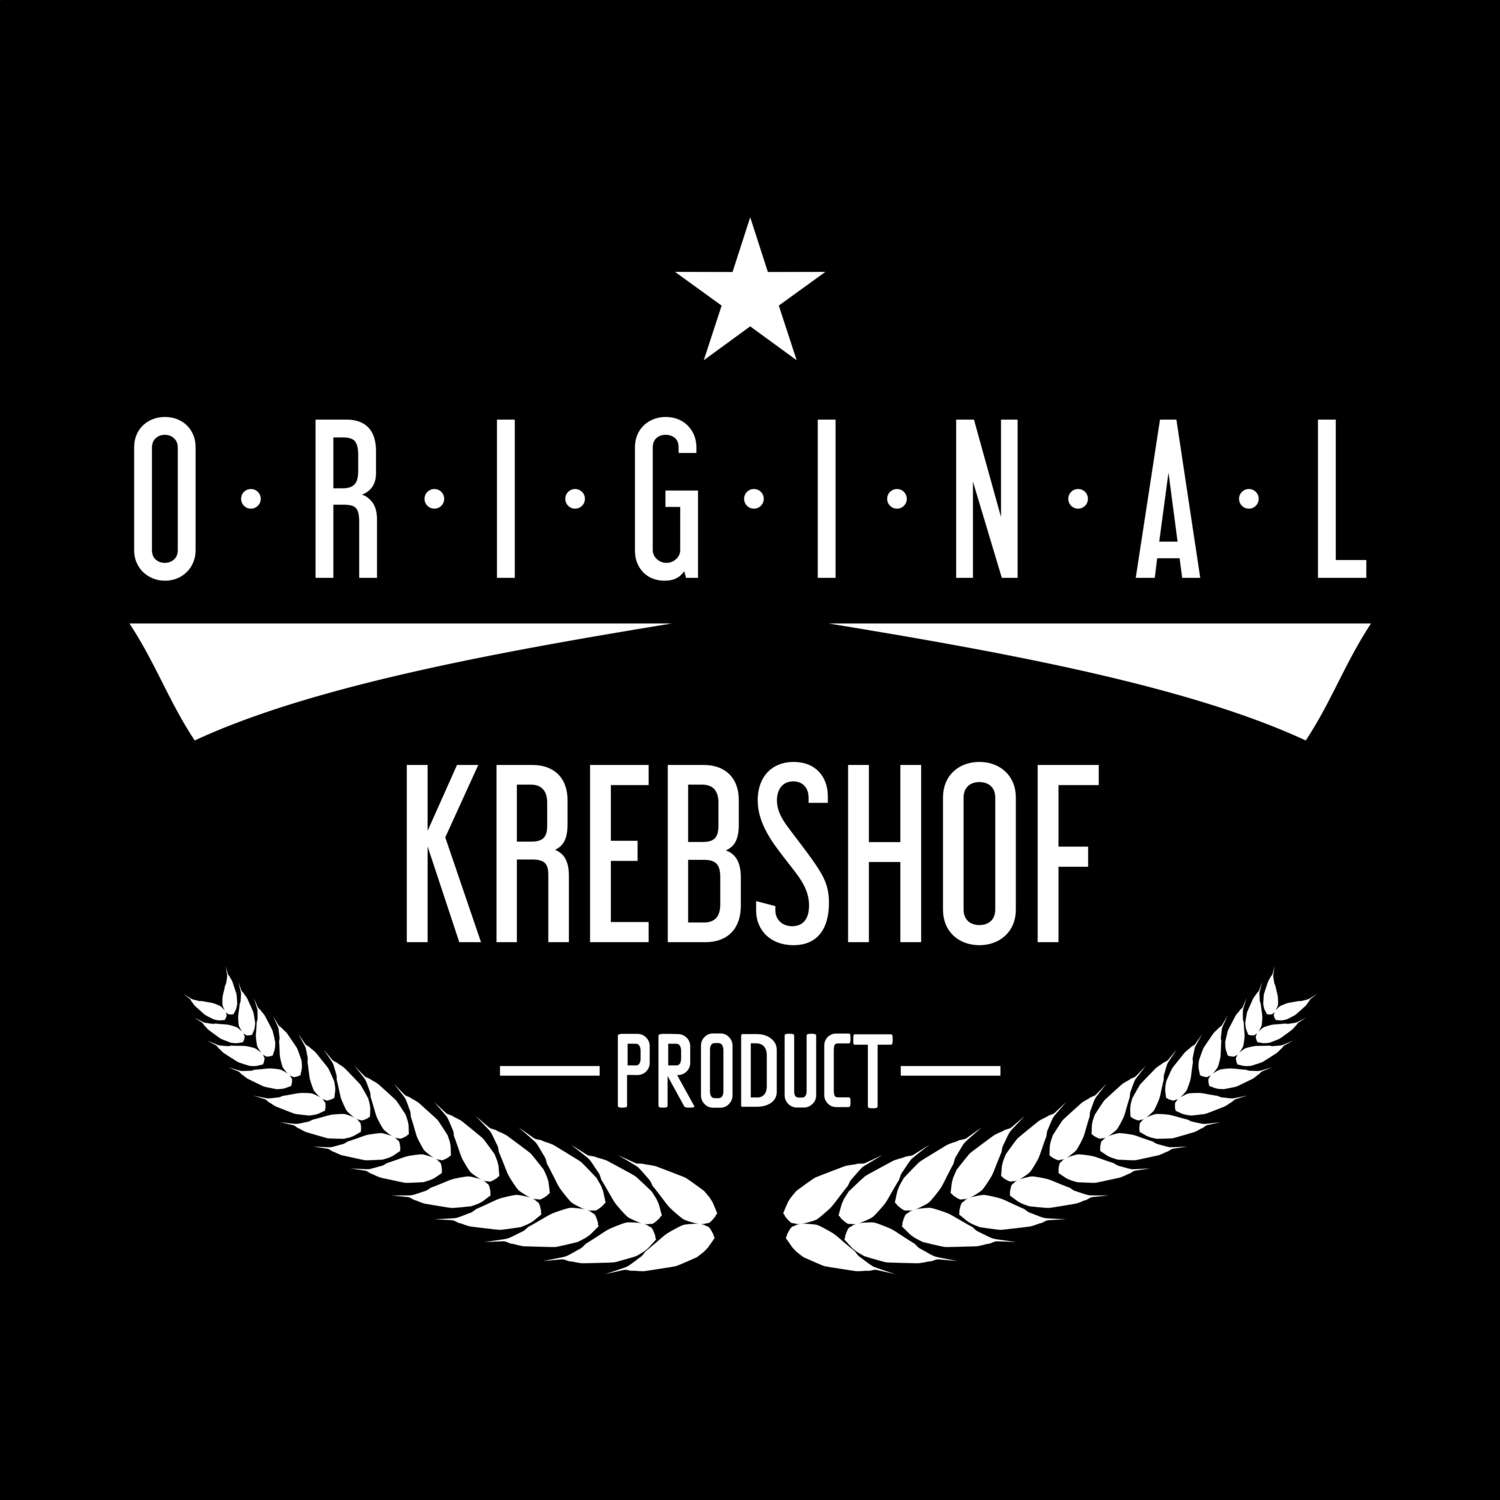 Krebshof T-Shirt »Original Product«